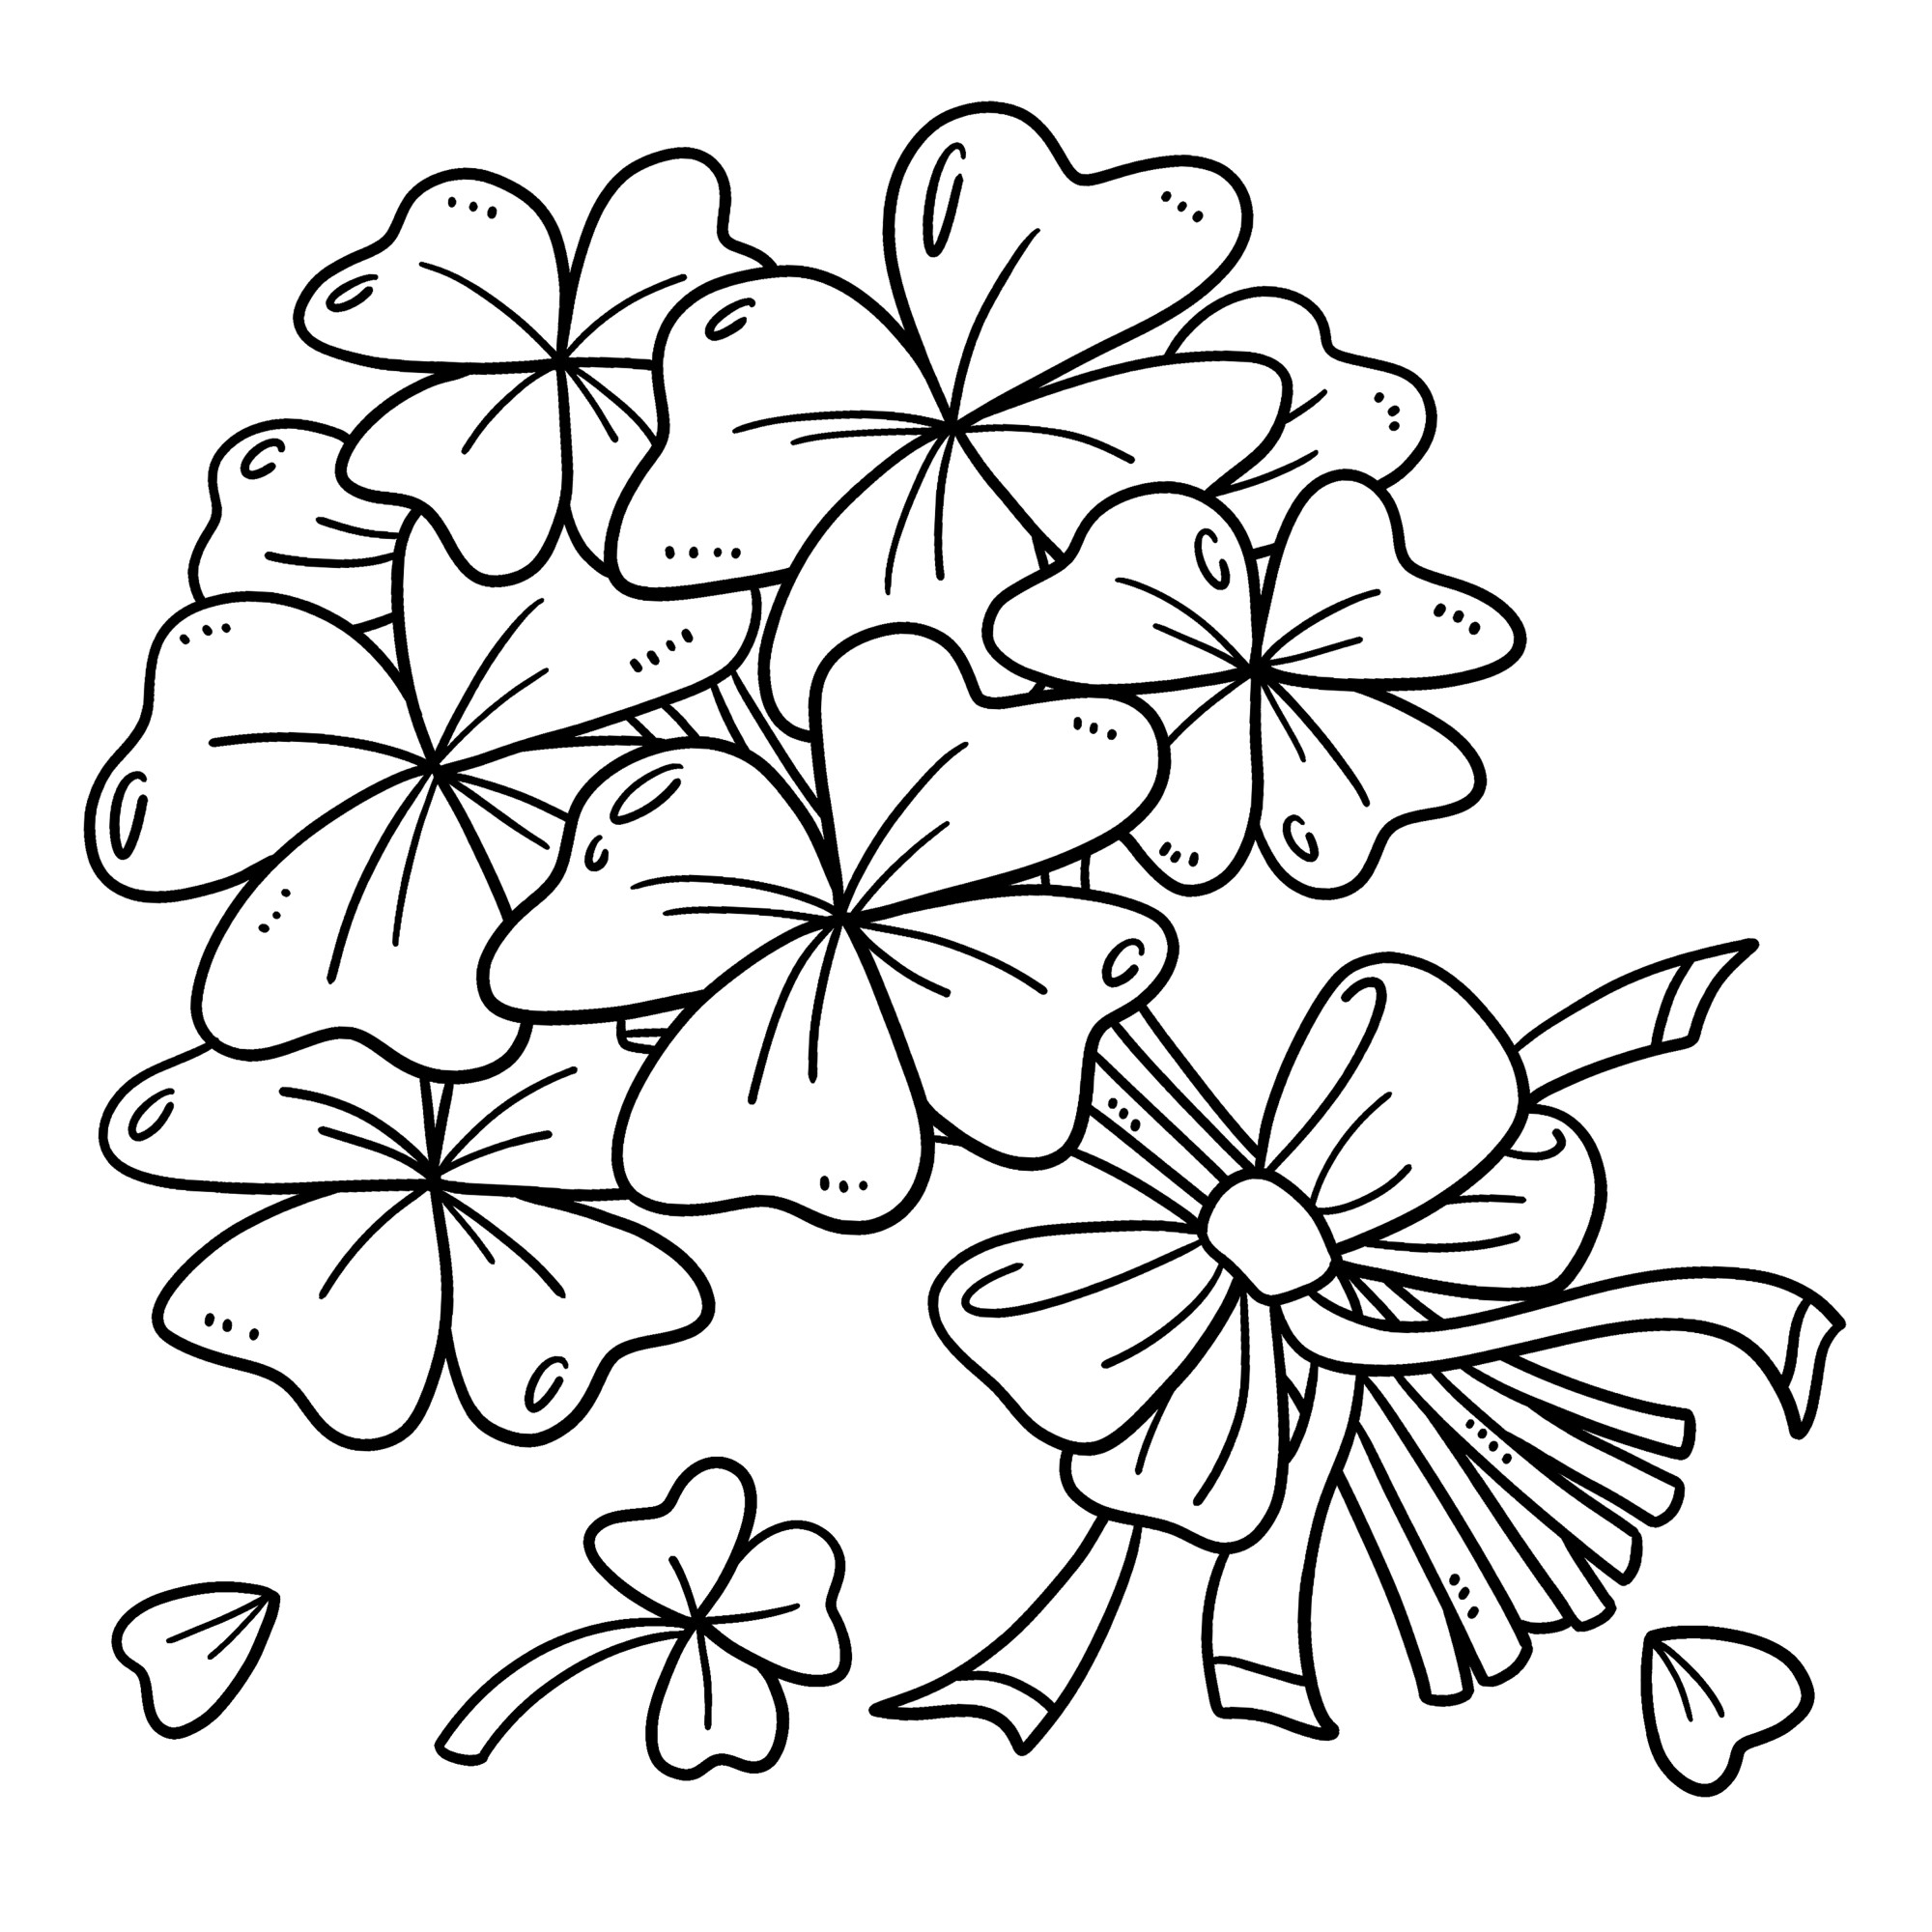 Раскраска для детей: букет цветов трилистника